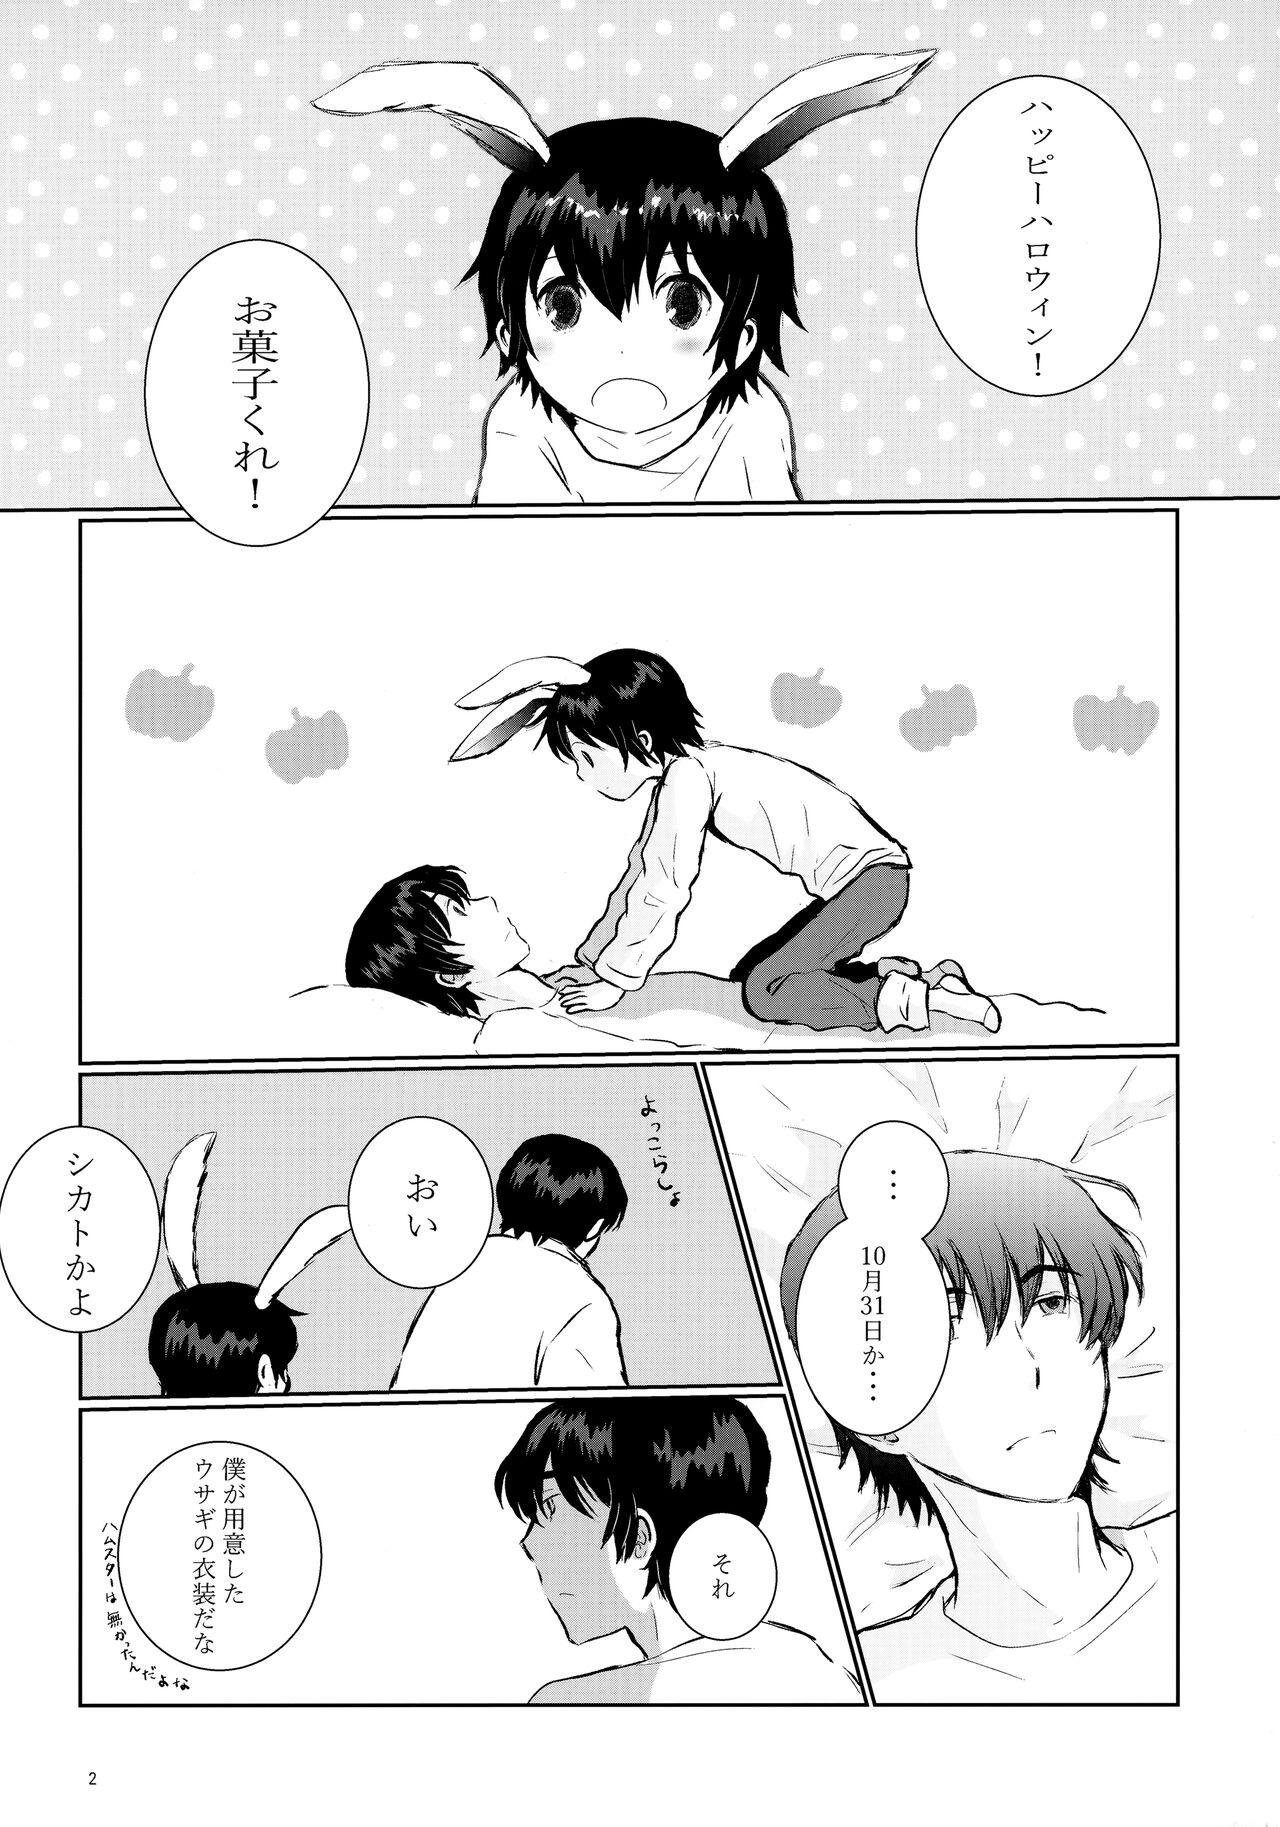 Piercing Usagi no Shippo - Boku dake ga inai machi | erased Kissing - Page 2